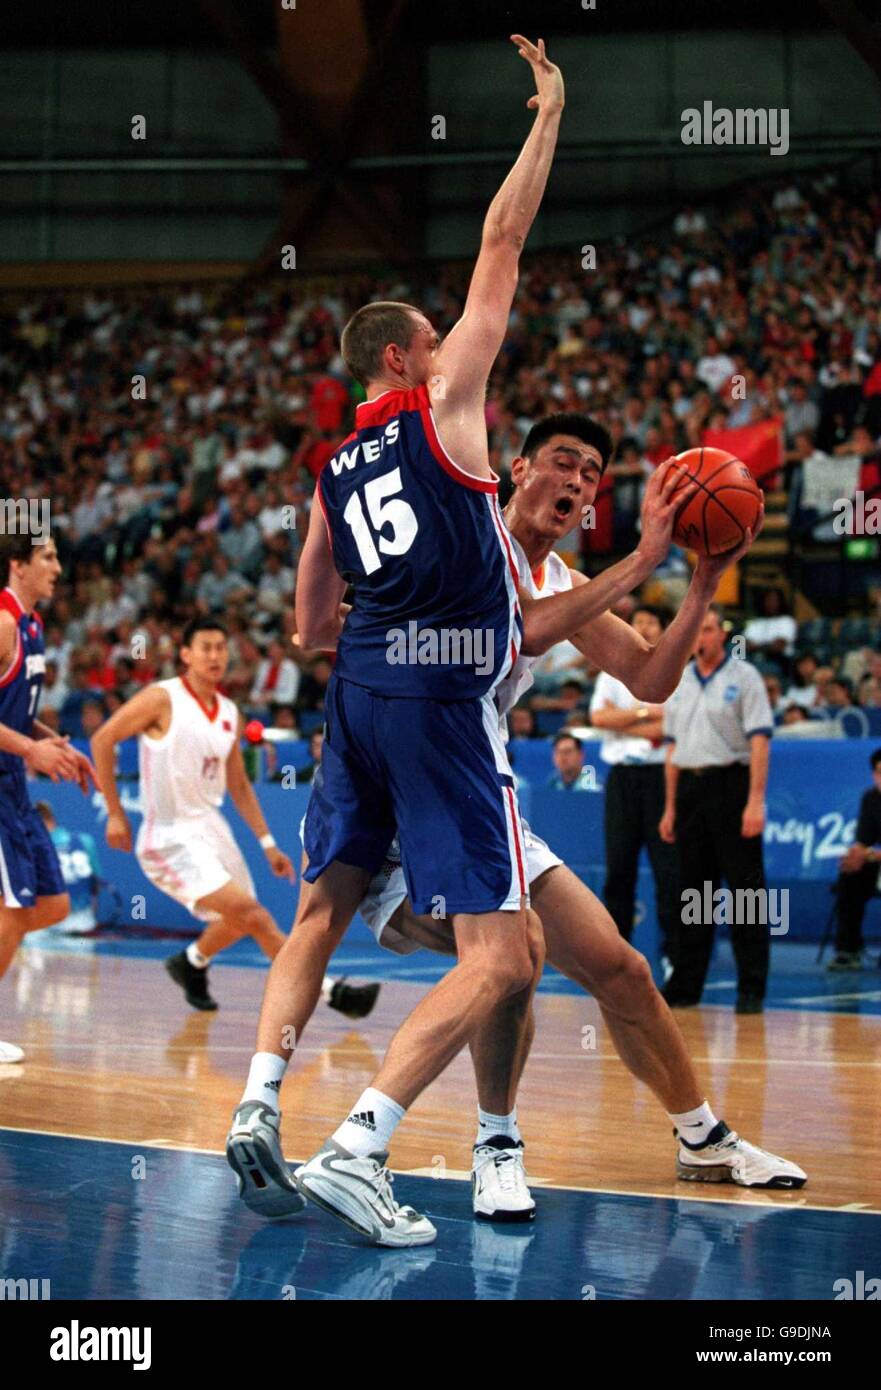 Sydney 2000 Giochi Olimpici - Basket - Cina / Francia. Frederic Weis (l) in Francia cerca di impedire il colpo da Yao Ming (r) in Cina Foto Stock